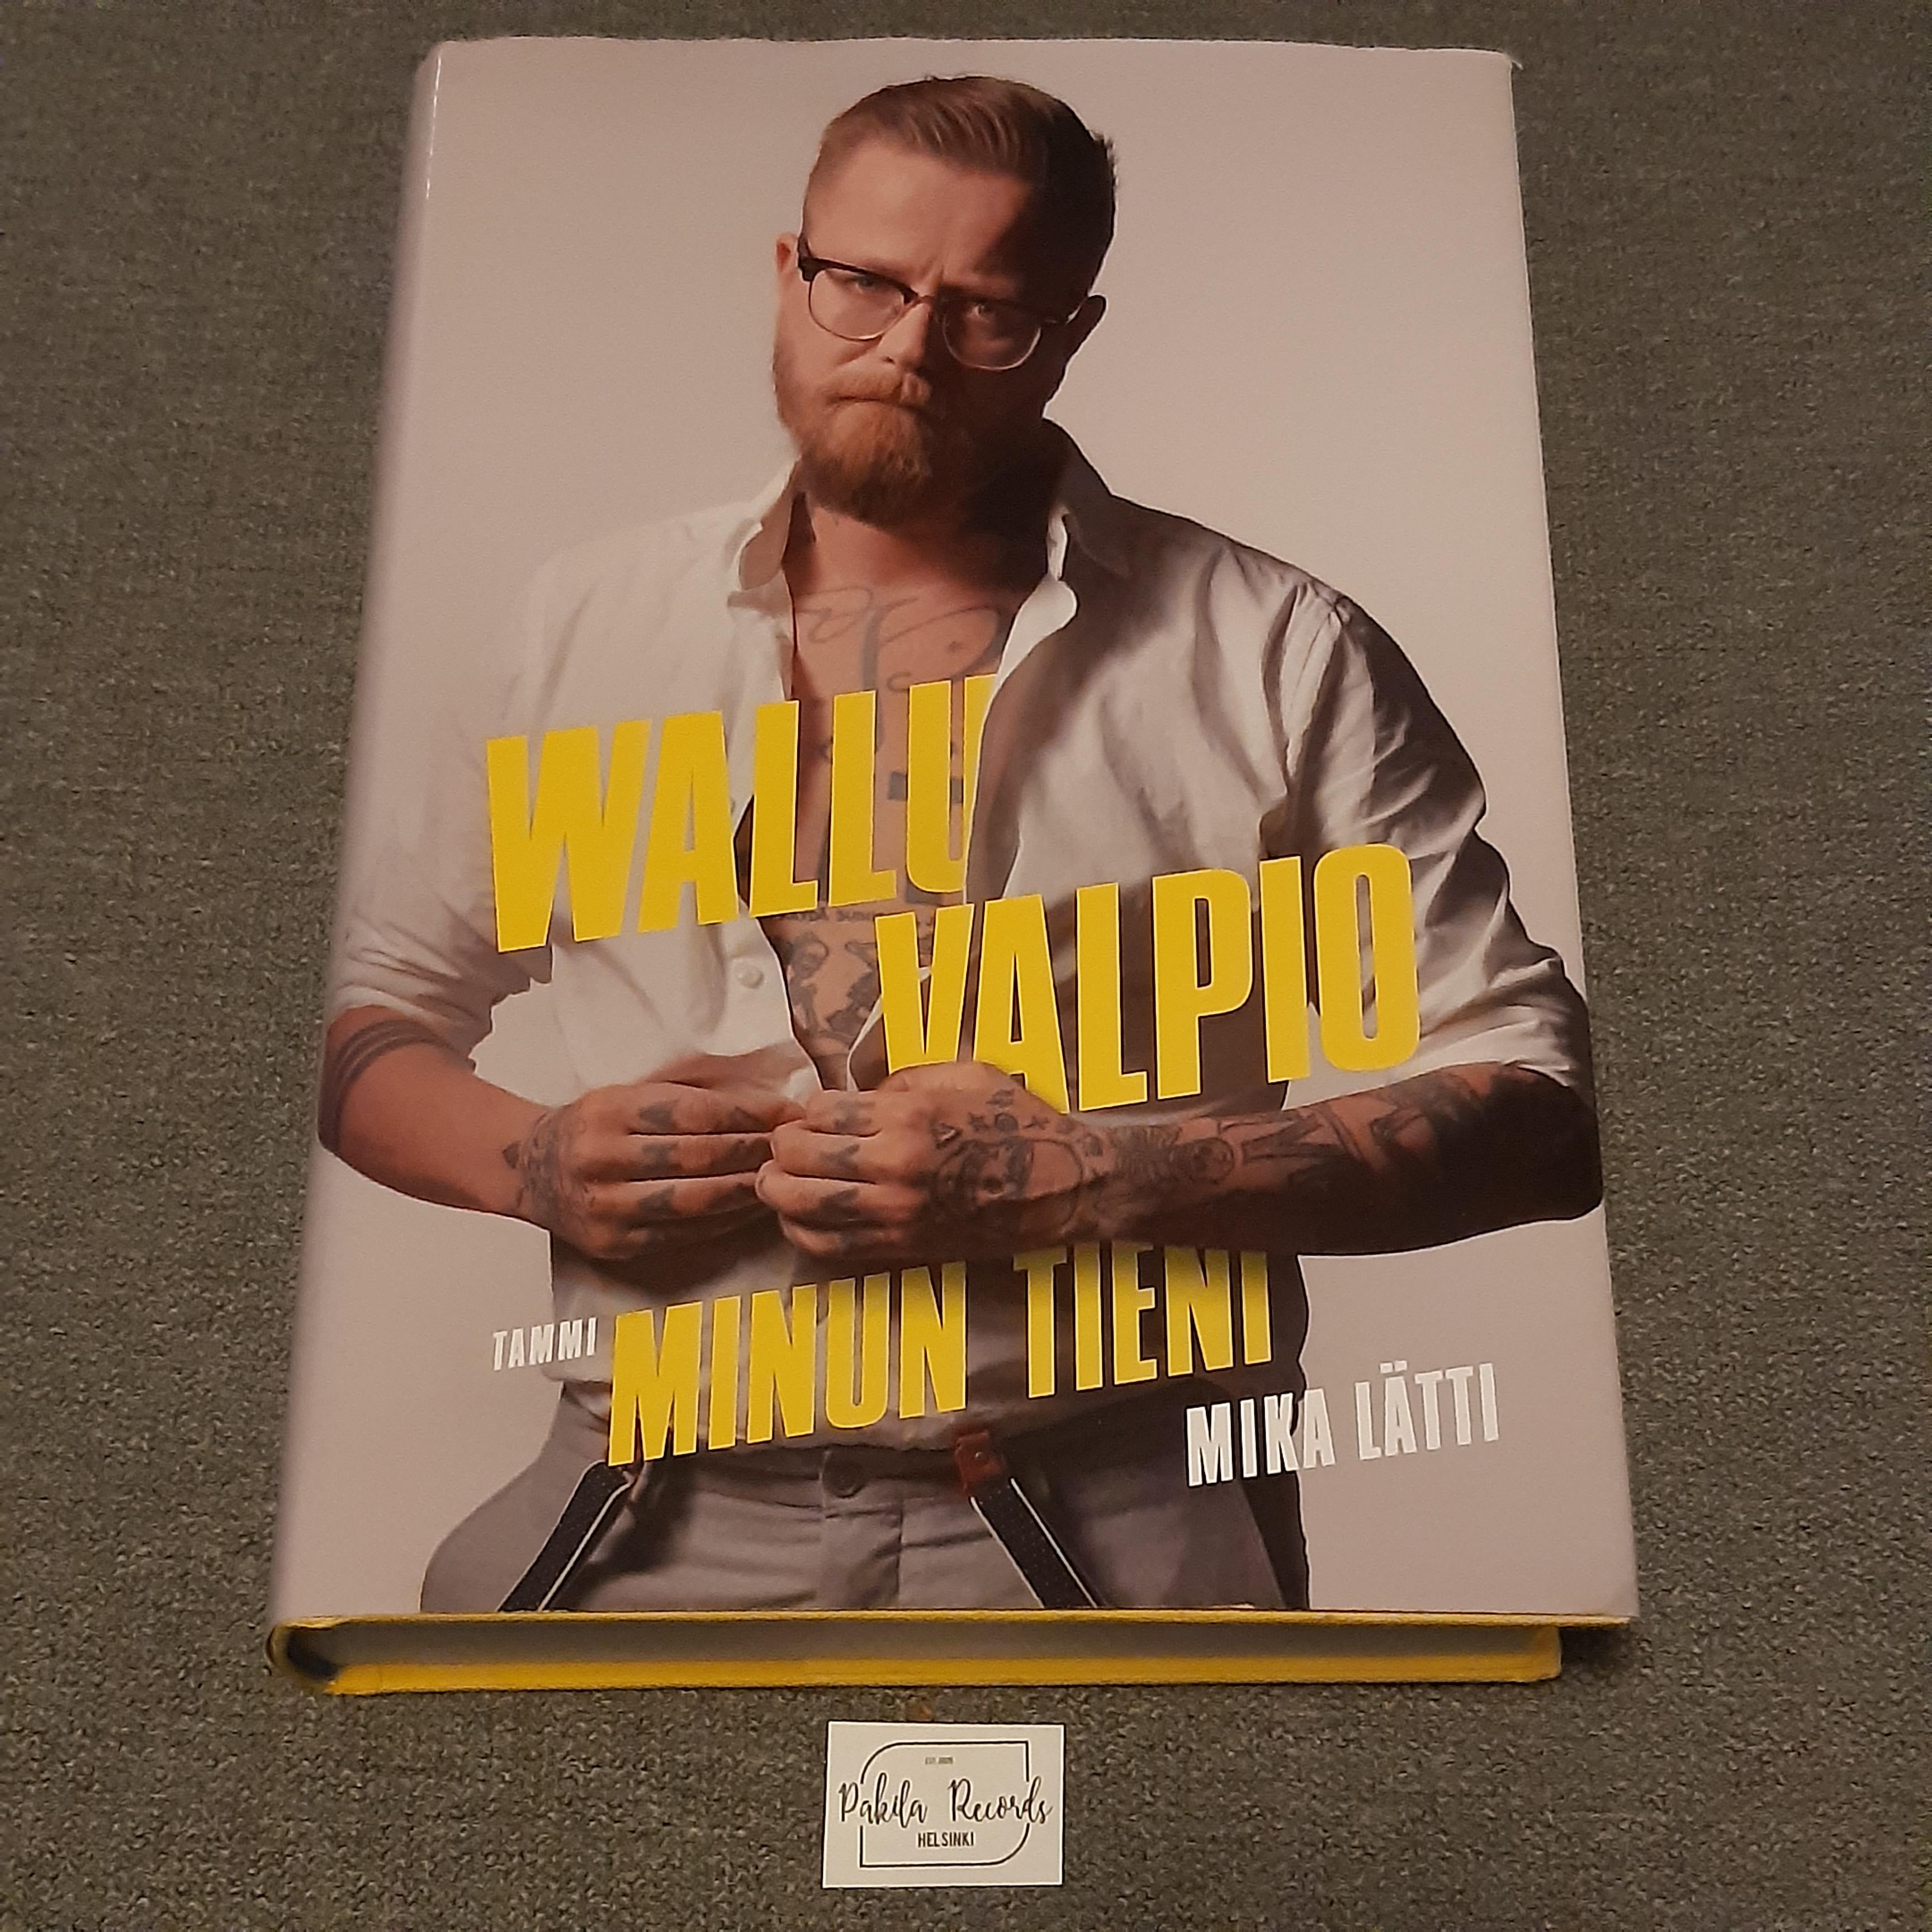 Wallu Valpio, Minun tieni - Mika Lätti - Kirja (käytetty)